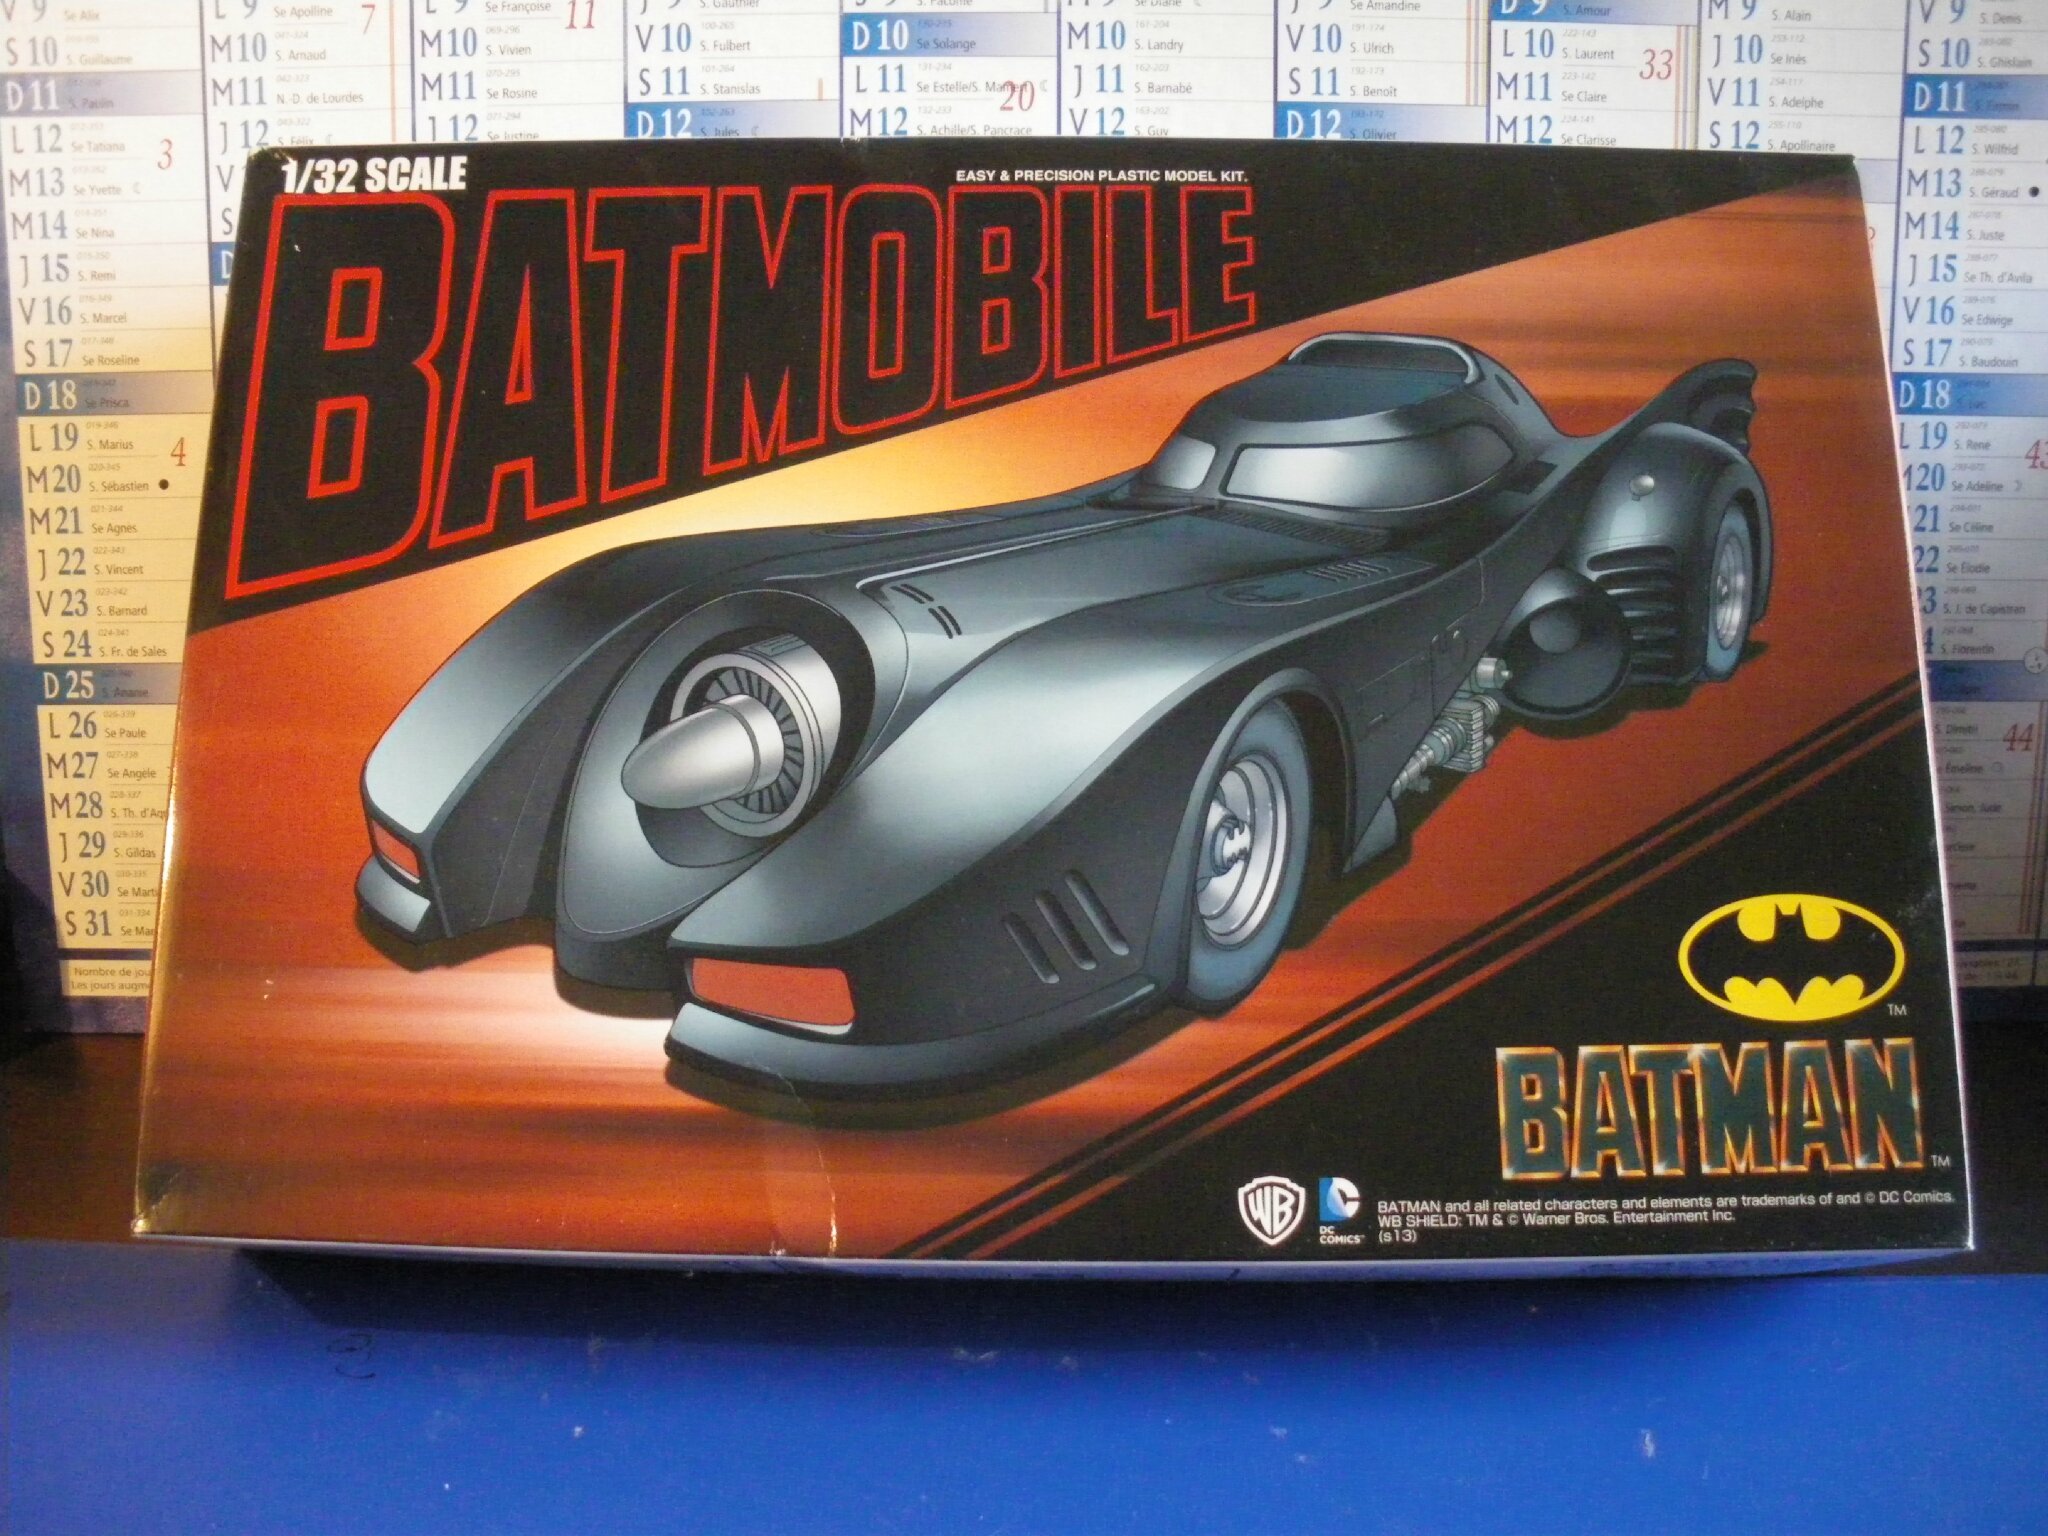 La mythique Batmobile de Tim Burton se gare au musée Miniature et